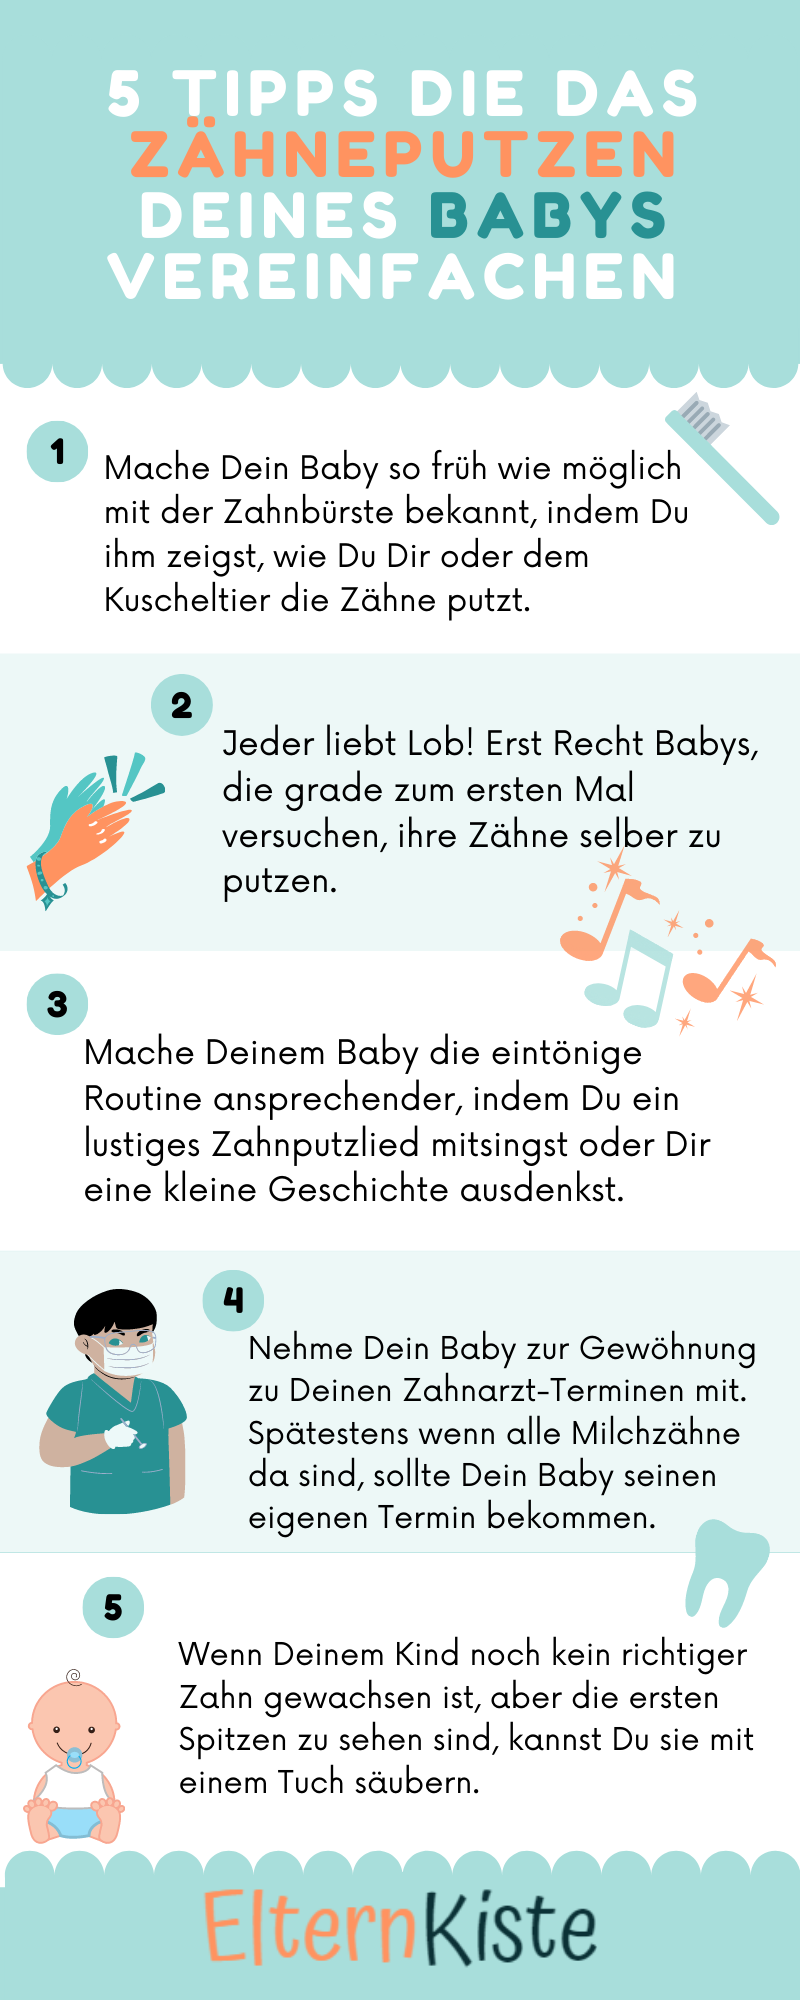 Infografik mit Tipps zum Zähneputzen bei Babys